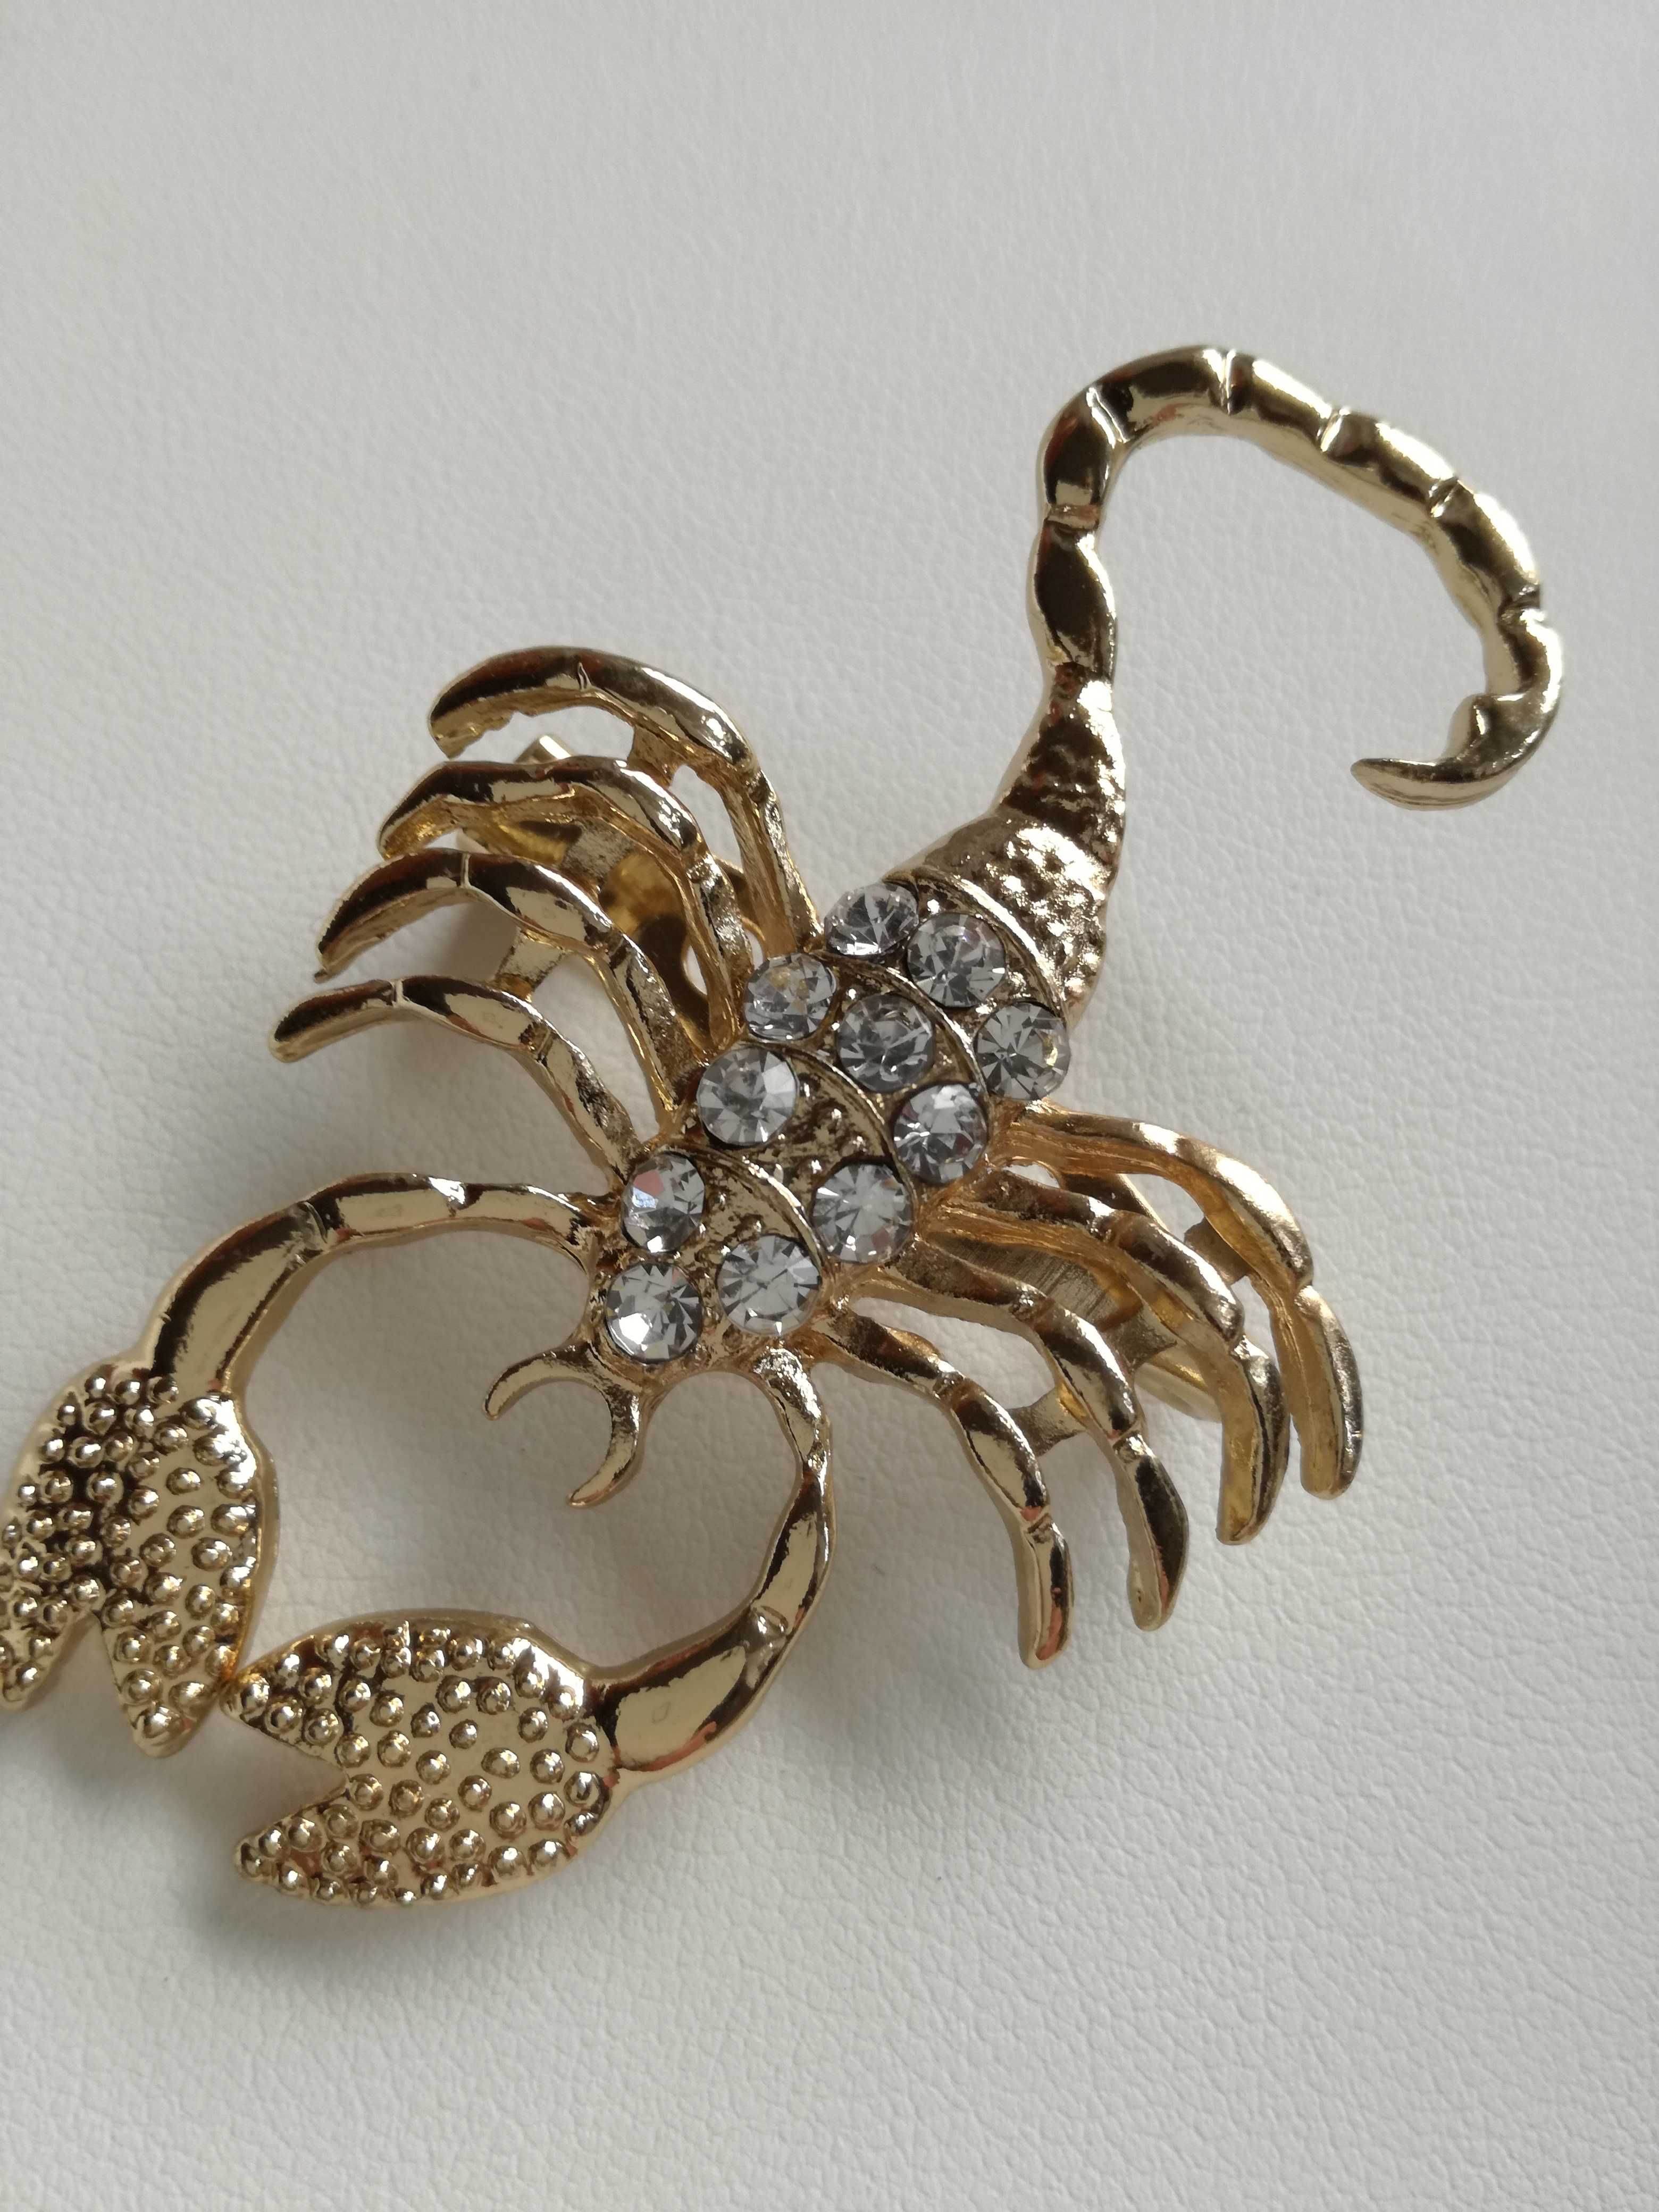 USA_BROSZKA/ZAWIESZKA_nieszablonowa biżuteria - złoty skorpion